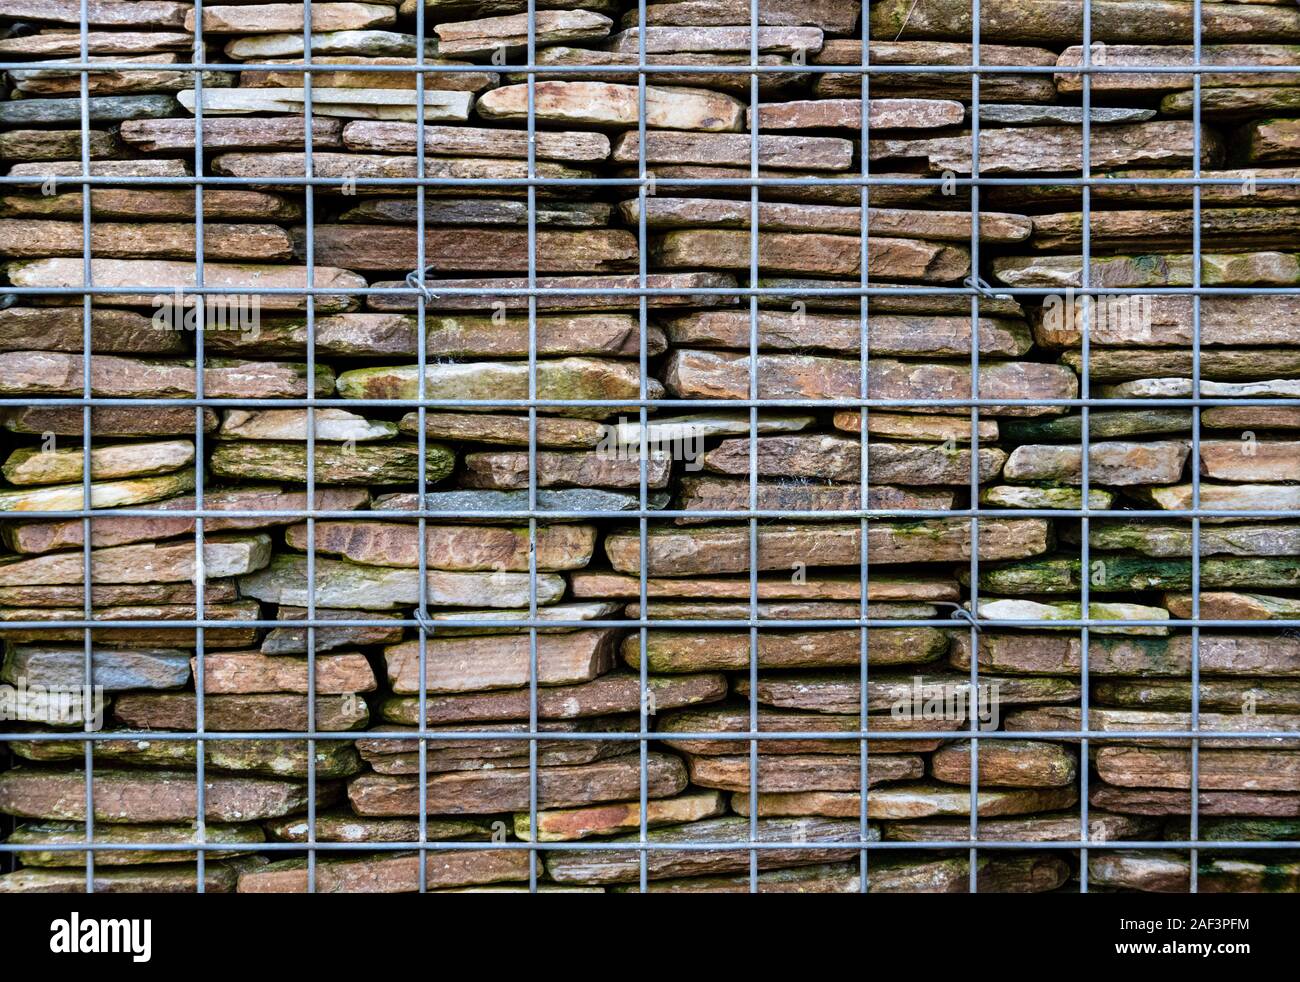 Cerca del muro de retención gabion, construidos de una jaula de alambre y piedras apiladas dentro. Foto de stock